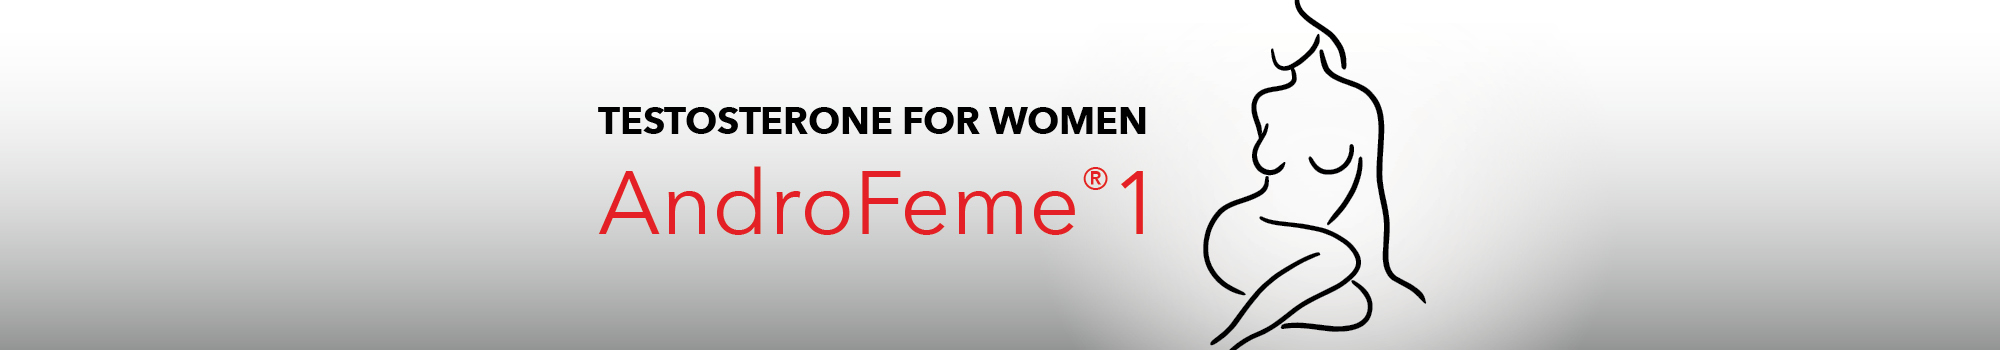 AndroFeme 1 – Testosterone for Women thumbnail